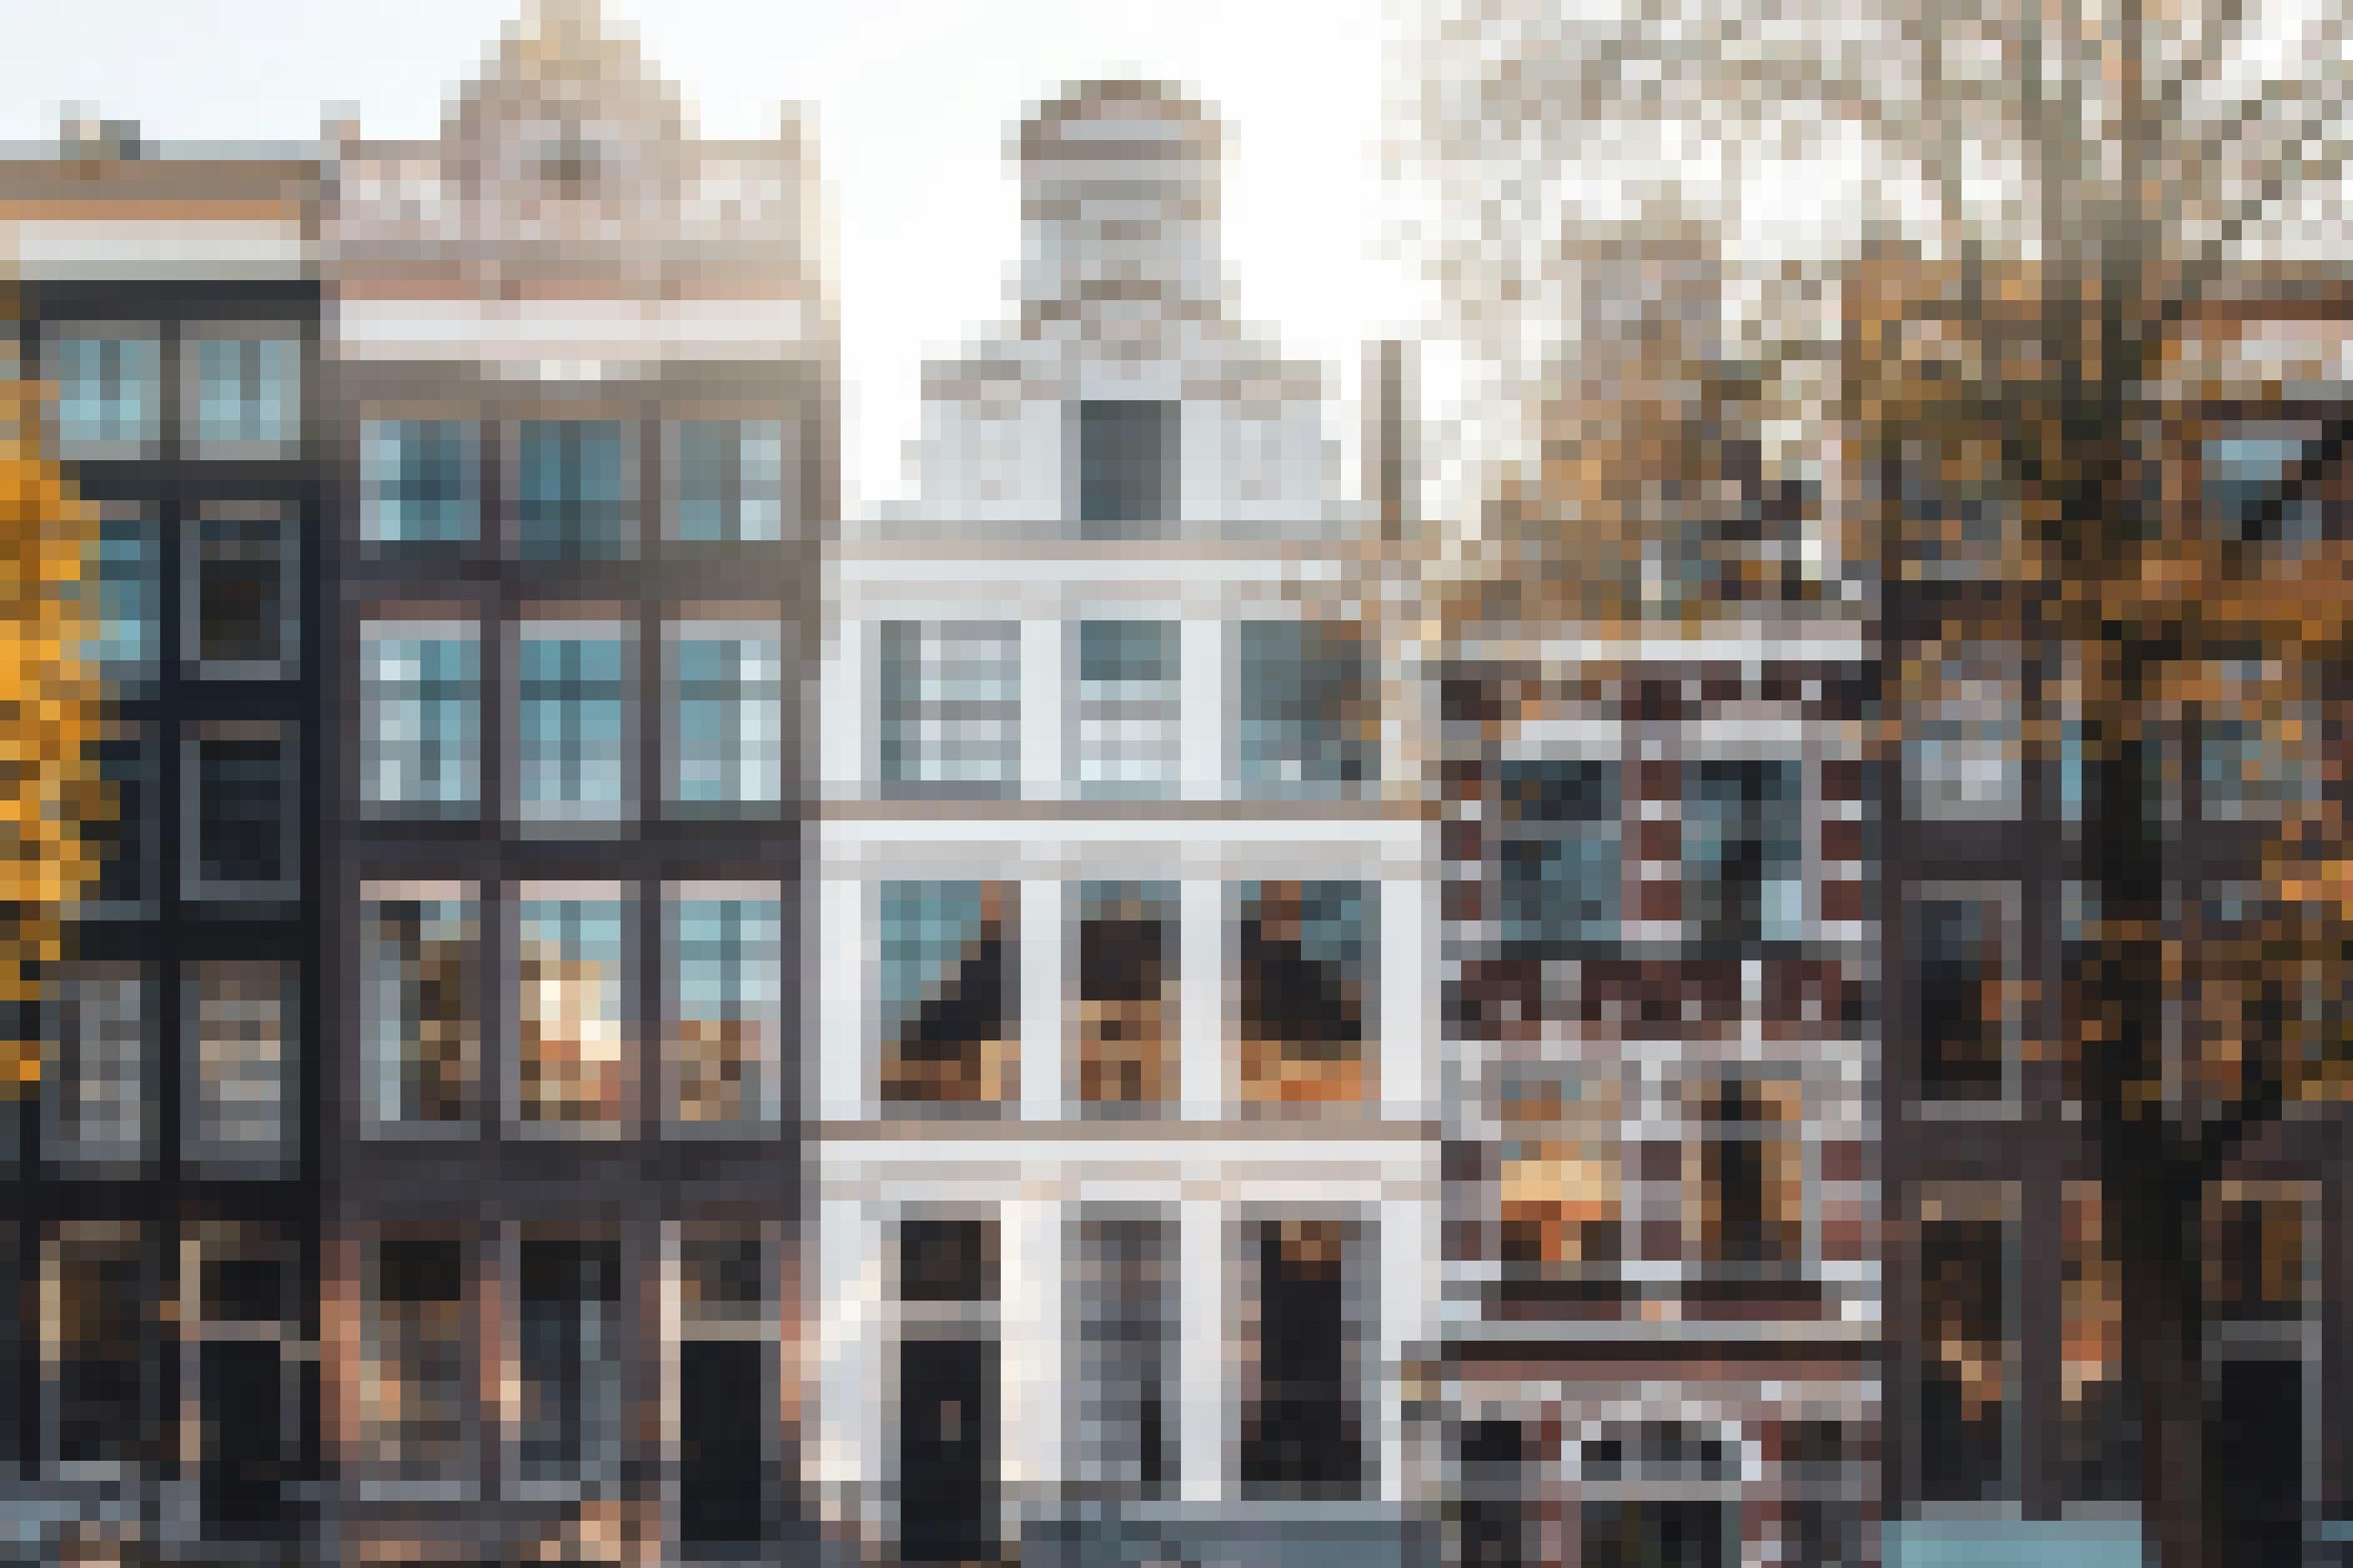 Blick auf eine Reihe von dekorativen Grachtenhäusern in Amsterdam